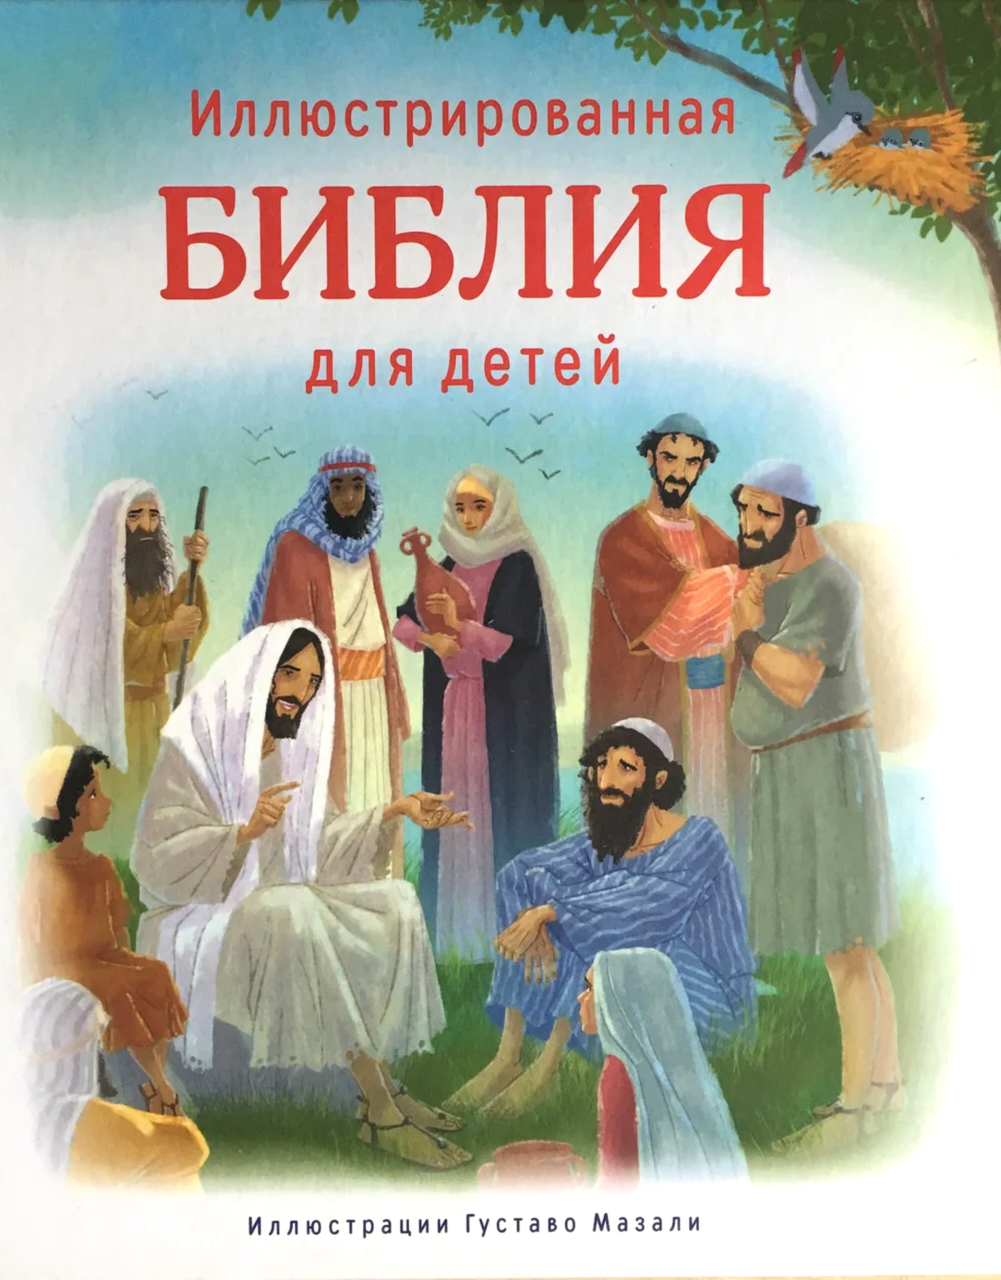 Иллюстрированная Библия для детей. Иллюстрации Густаво Мазали